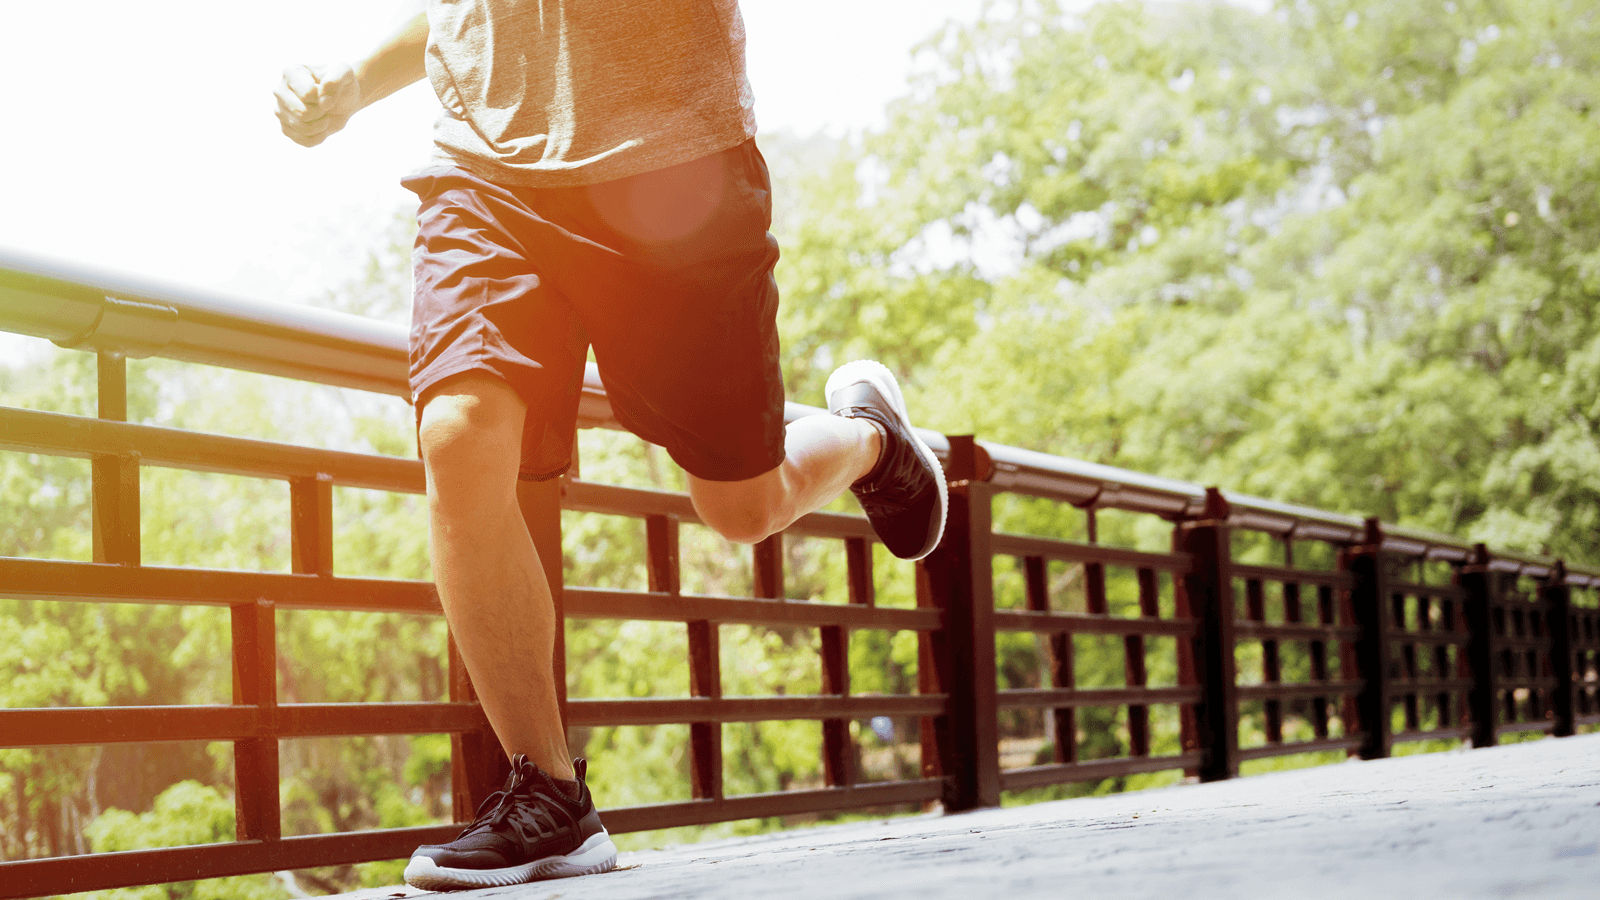 Chạy bộ là một môn thể thao đơn giản, dễ tập luyện với bất kỳ ai và cũng mang lại rất nhiều lợi ích sức khỏe cho người tập. Nhân Ngày Chạy bộ Toàn cầu, GenVita ‘tiết lộ’ 10 lợi ích mà bạn nhận được khi chạy bộ mỗi ngày